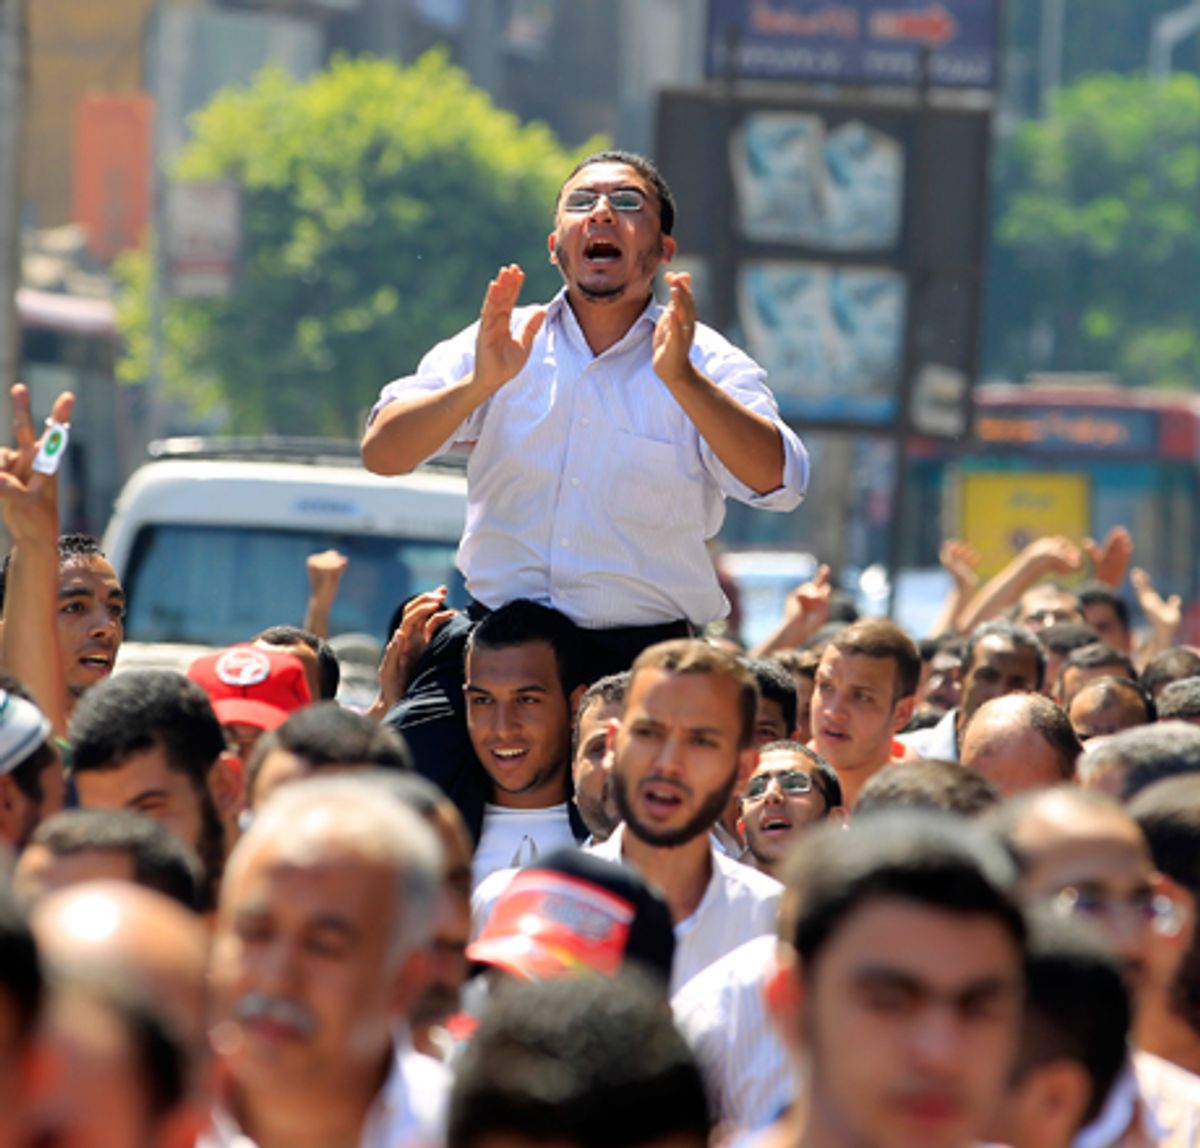        (Reuters/Mohamed Abd El Ghany)